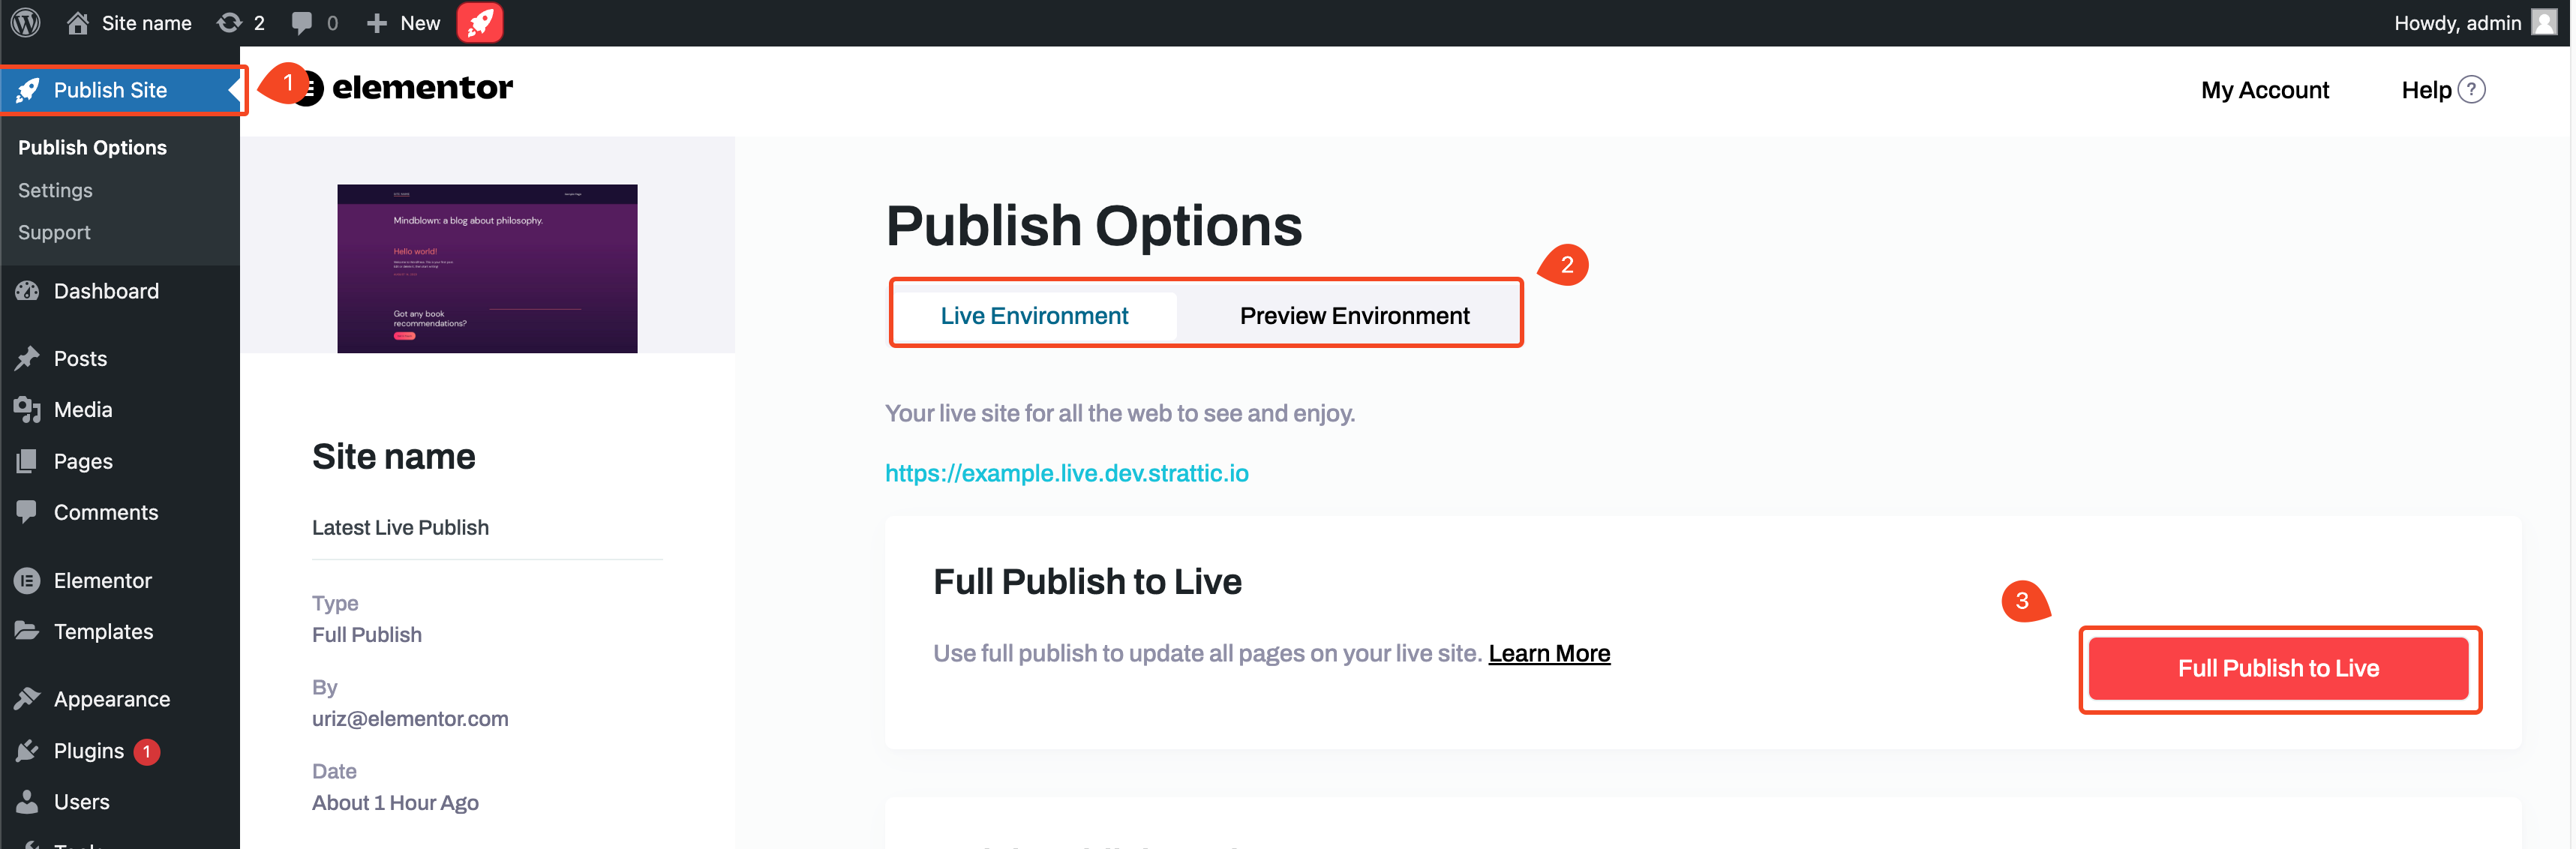 publish options full publish Full Publish 5